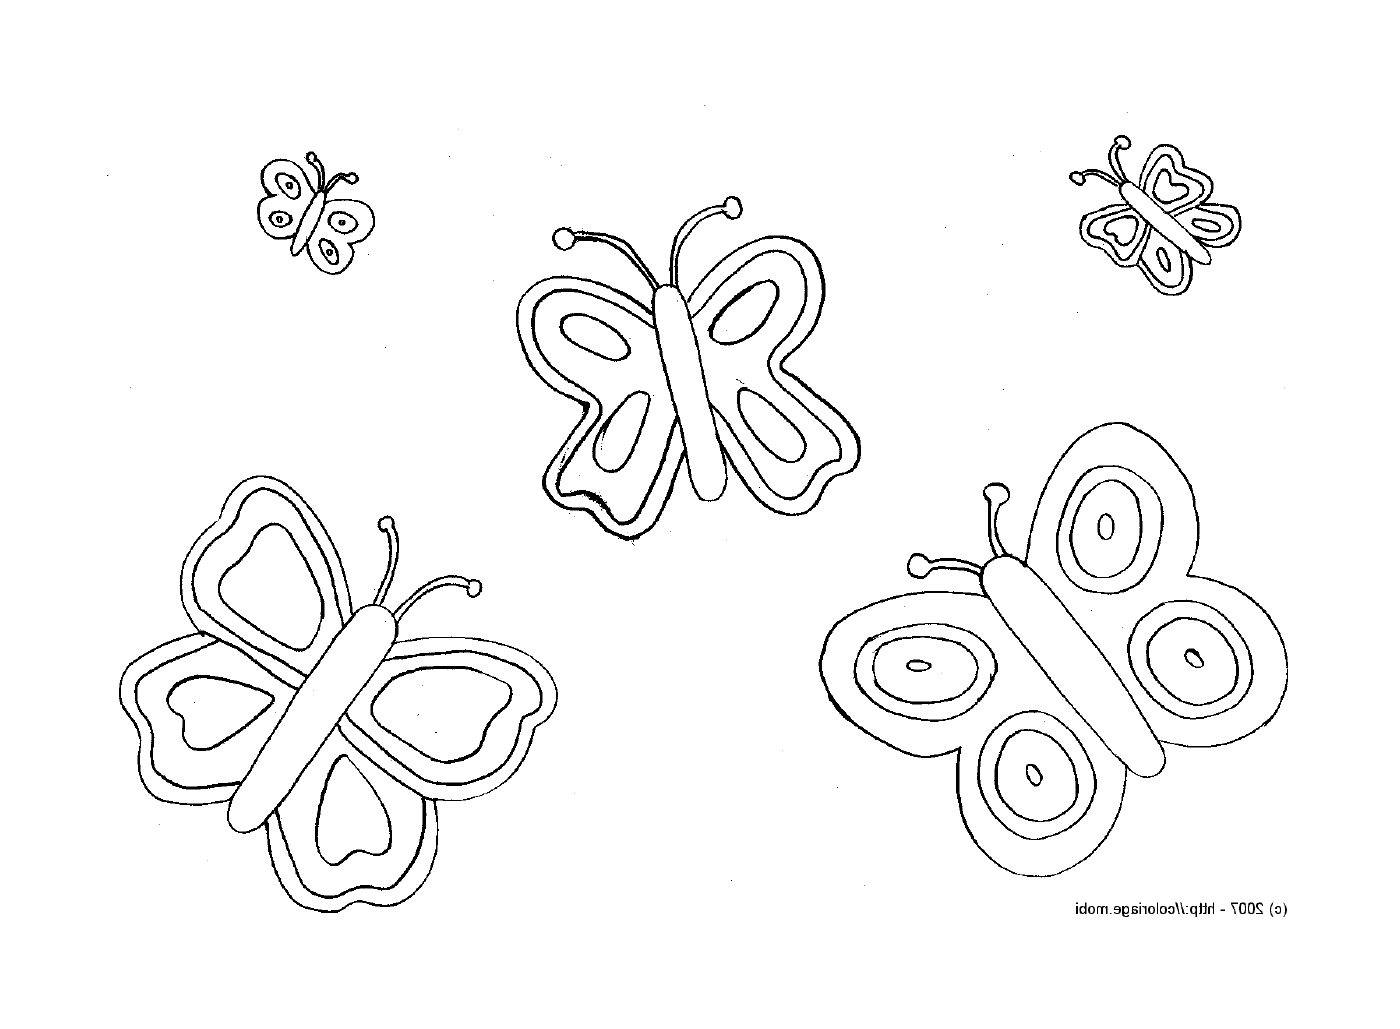  Mariposa delicada con patrones vibrantes 